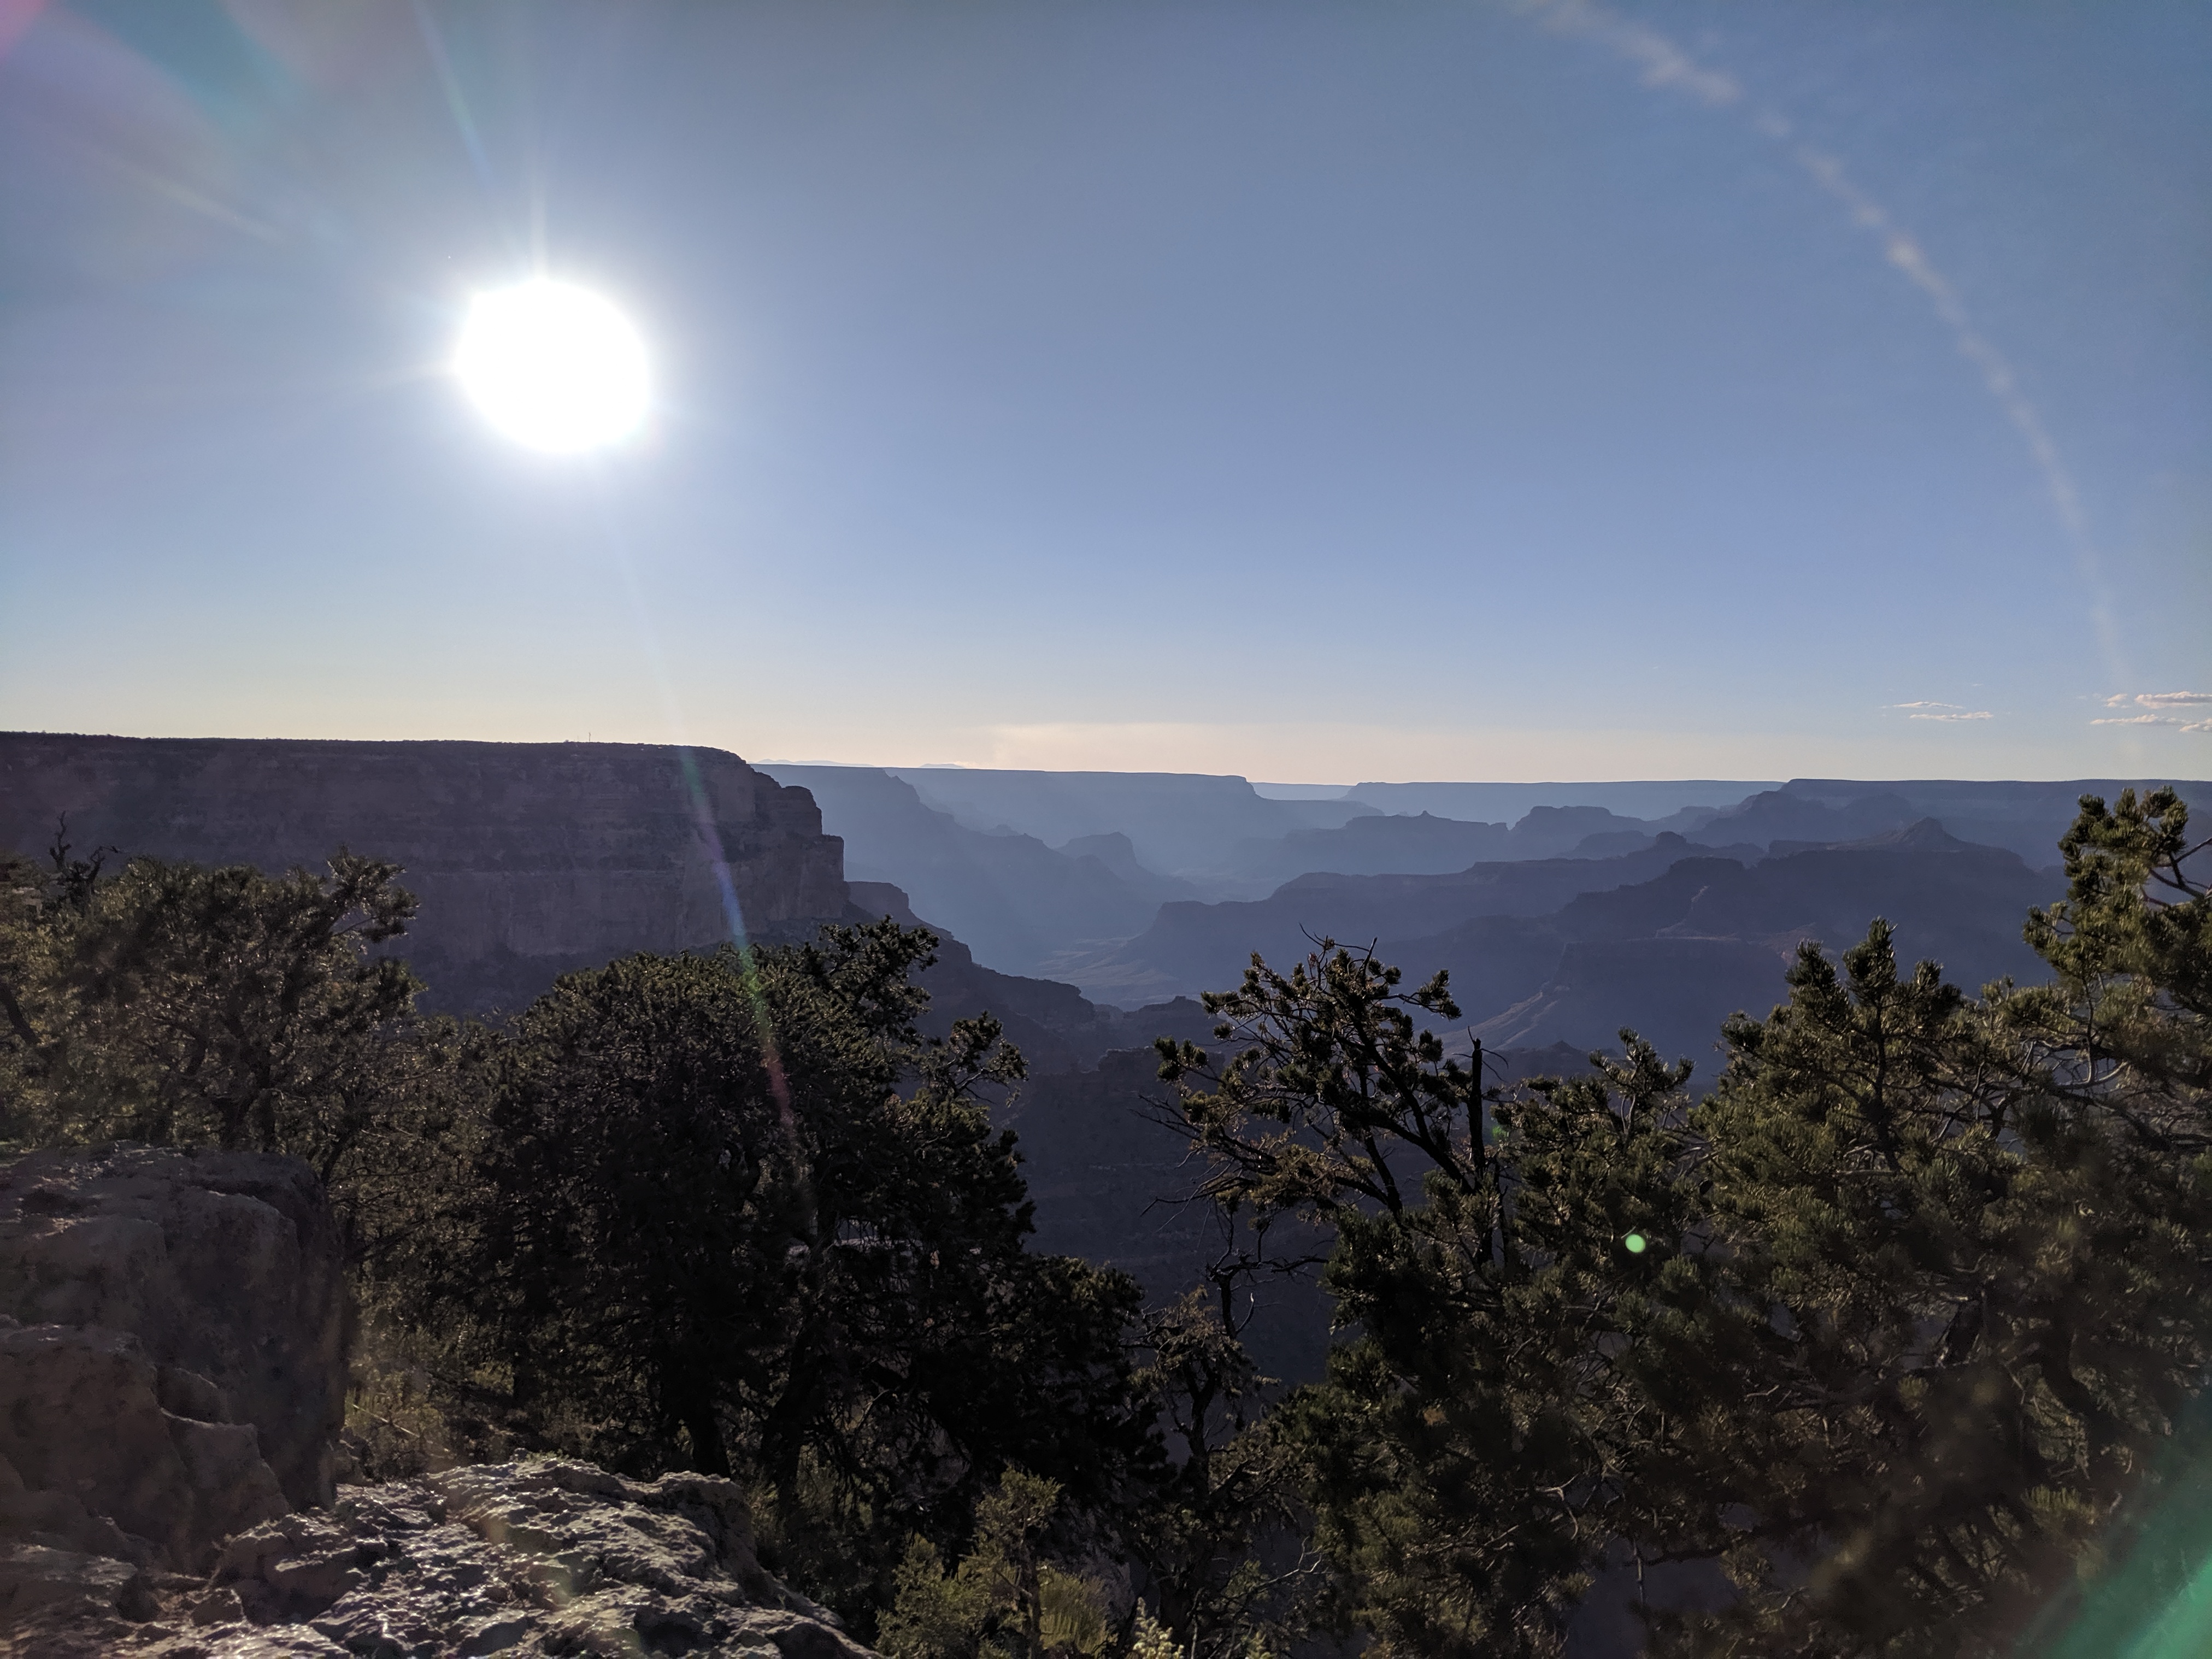 Afternoon at grand canyon